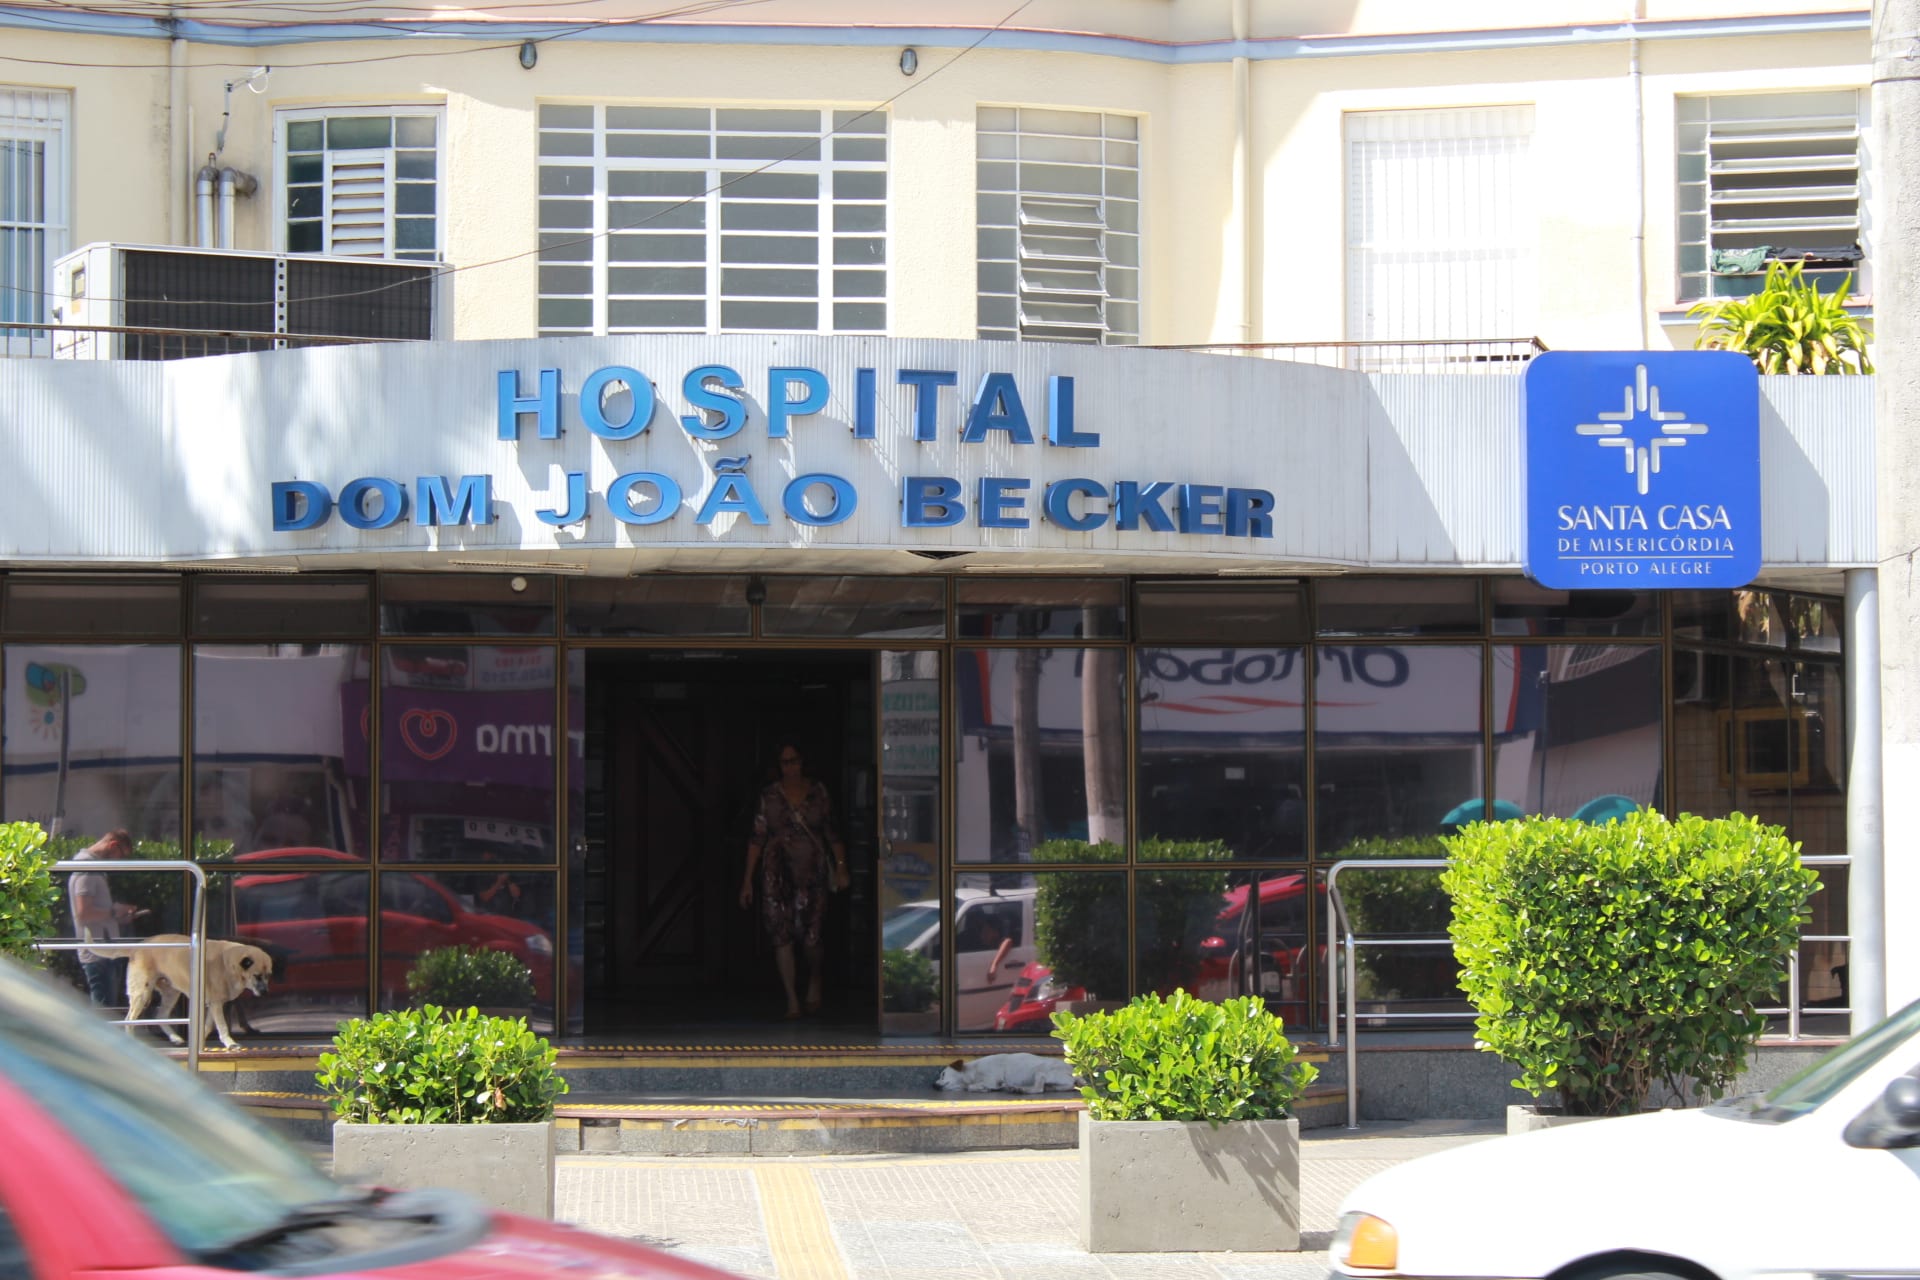 Golpistas se passam por médicos para pedir dinheiro a familiares de pacientes em Gravataí